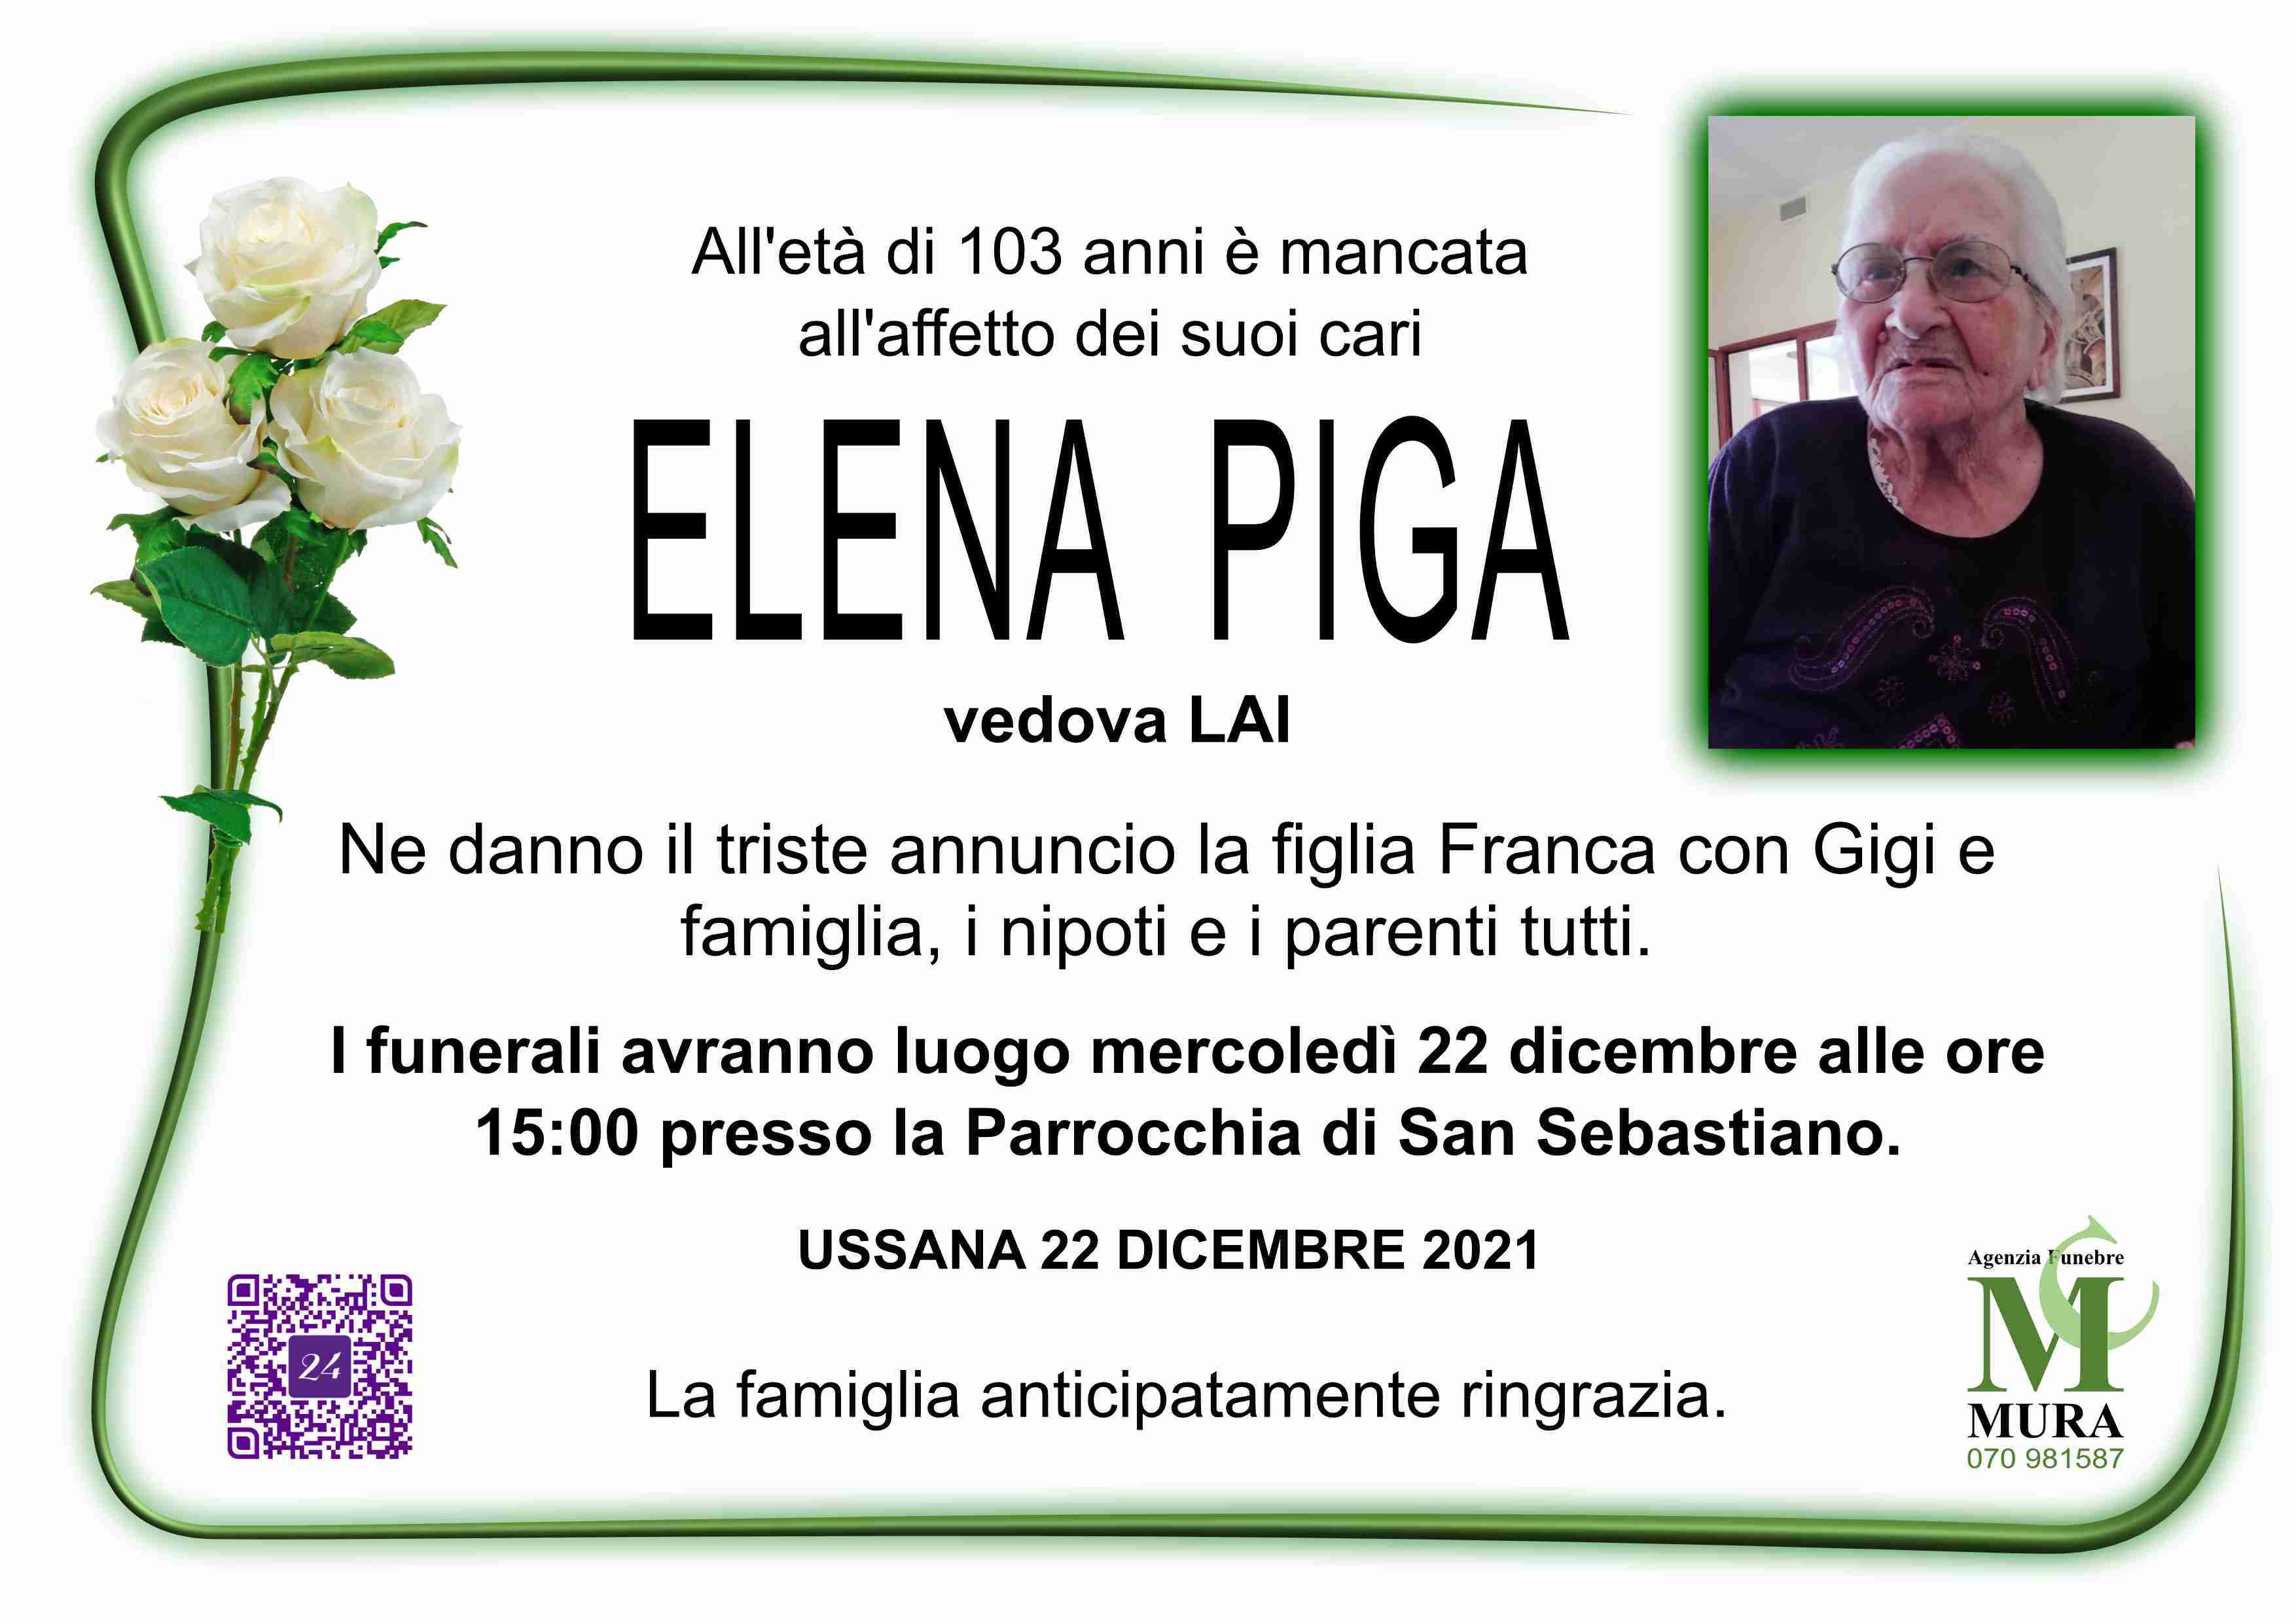 Elena Piga